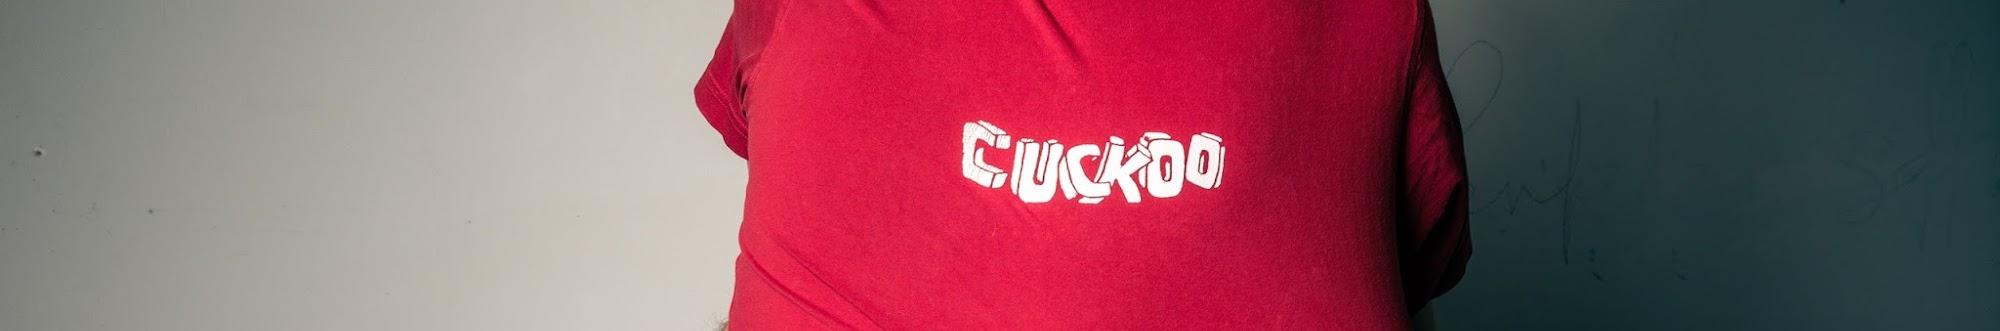 True Cuckoo